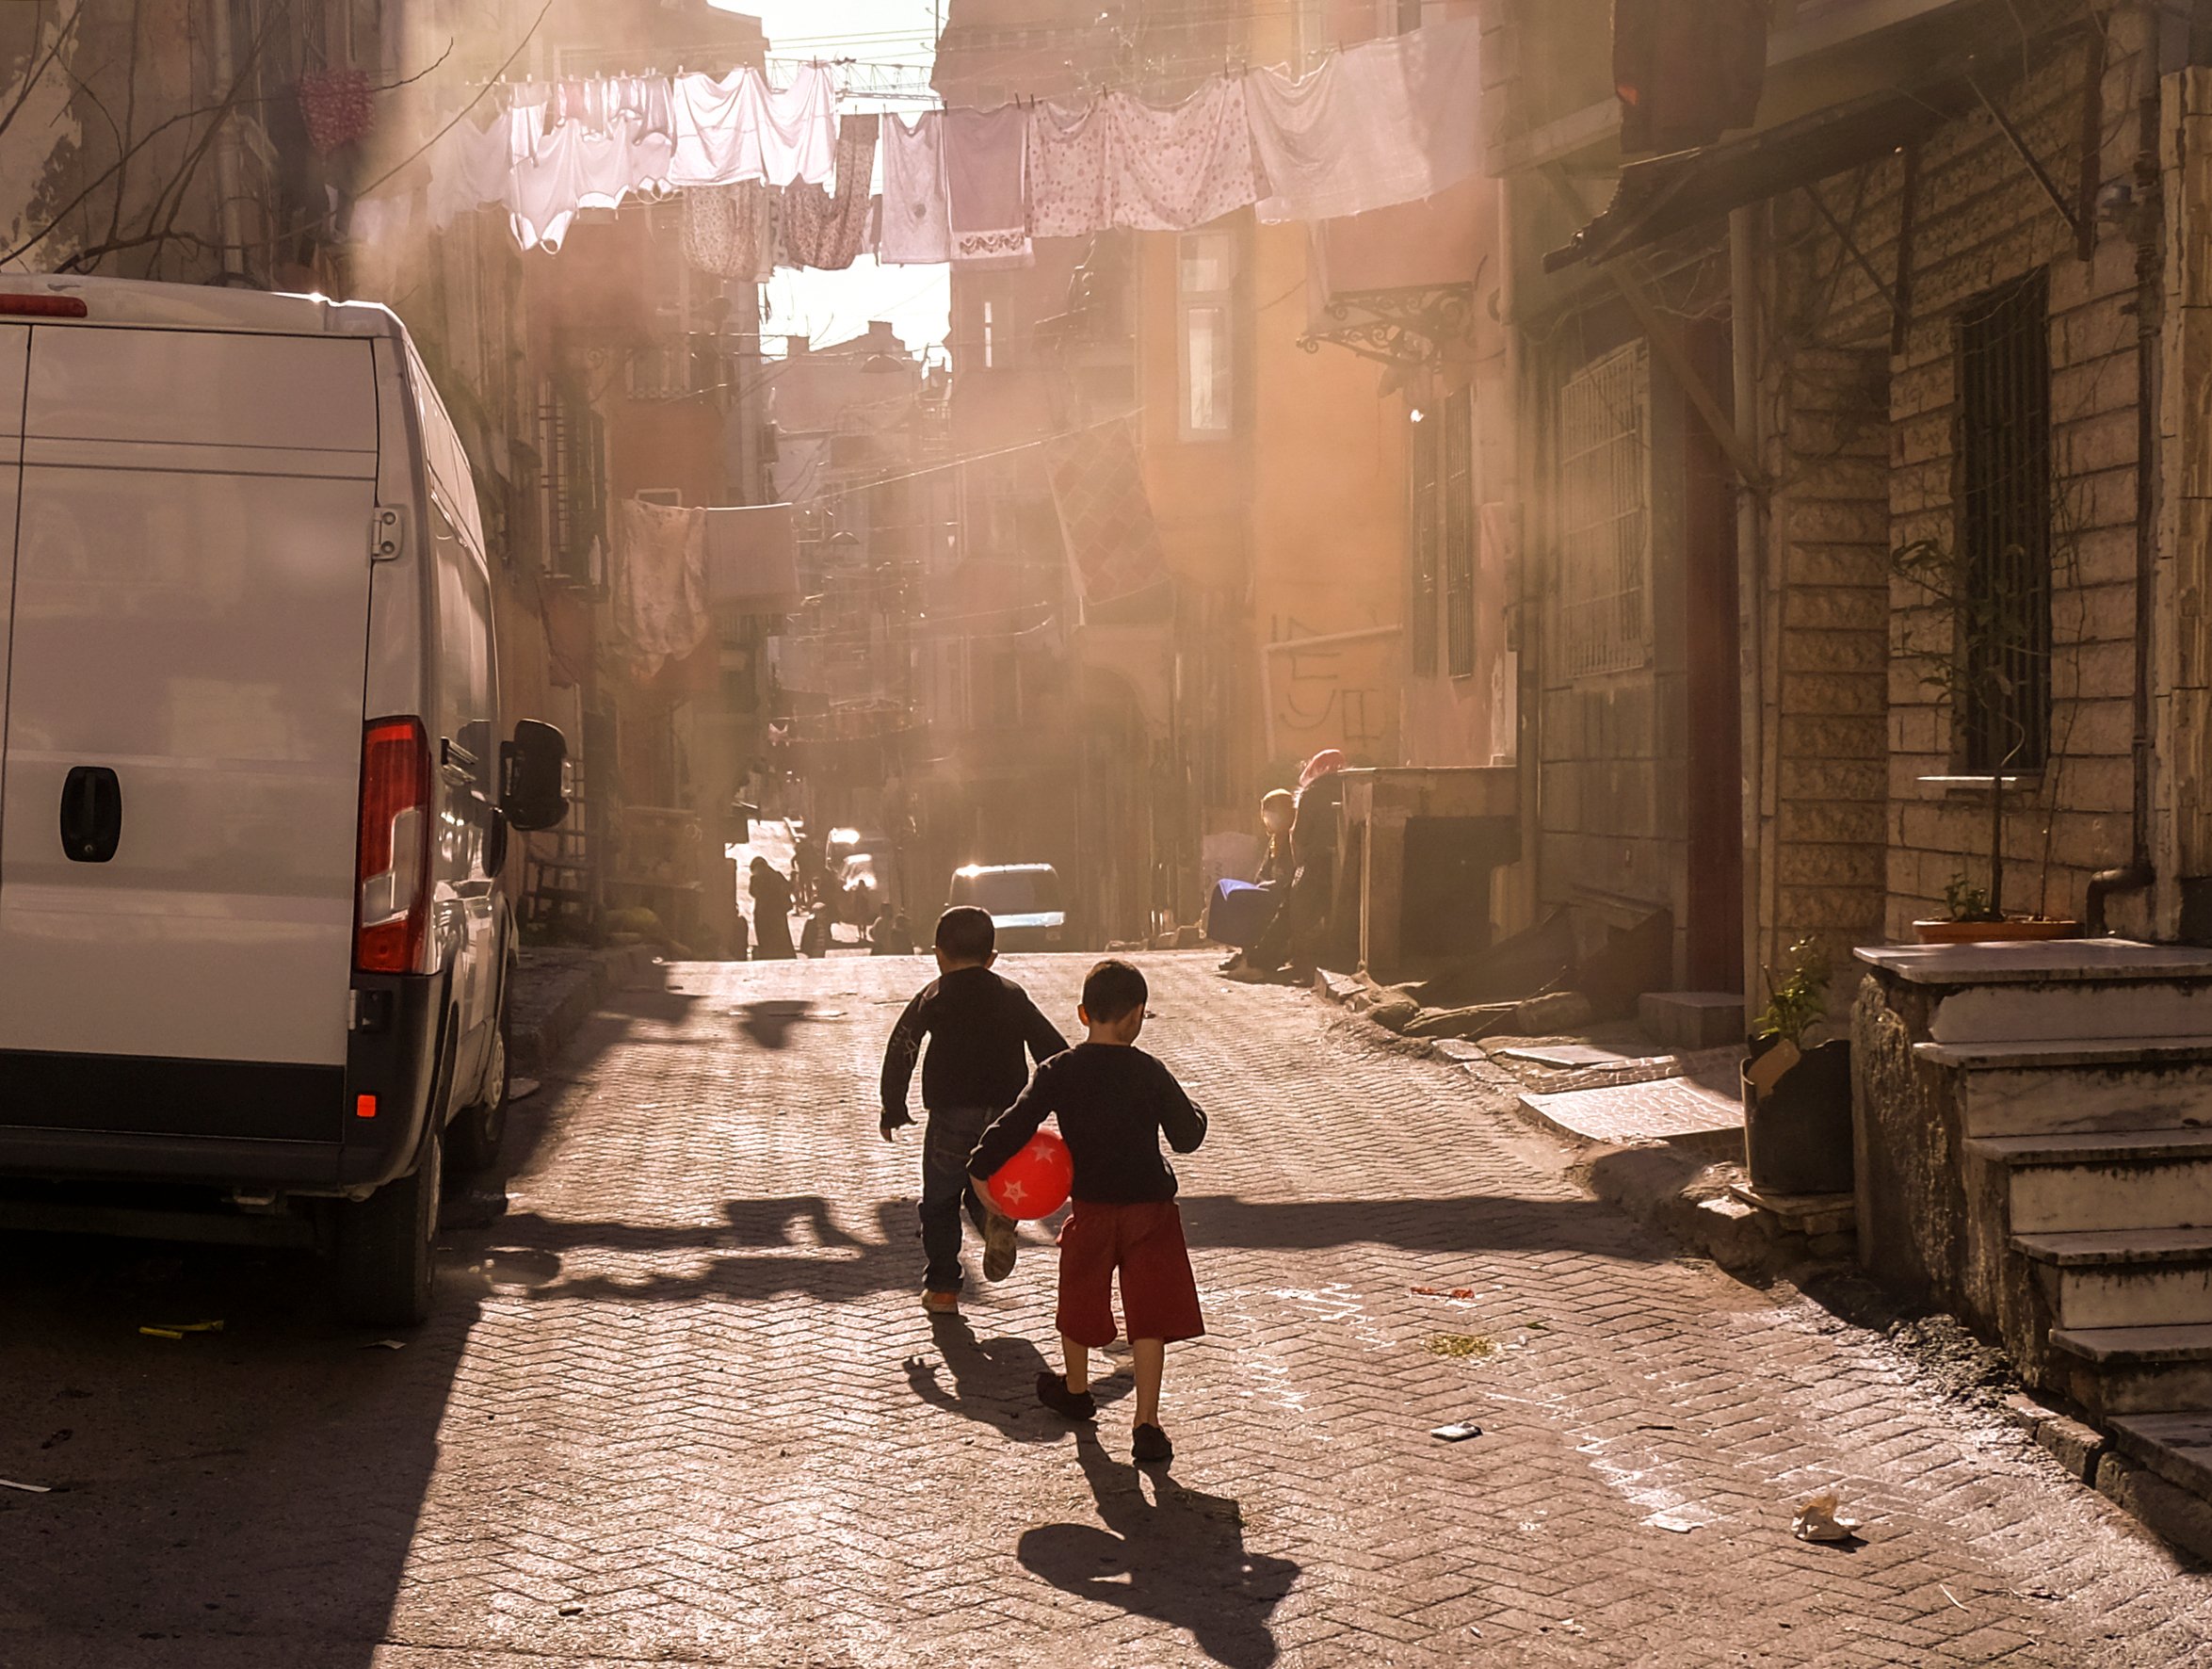 Niños jugando en vecindario humilde. | Foto: Shutterstock